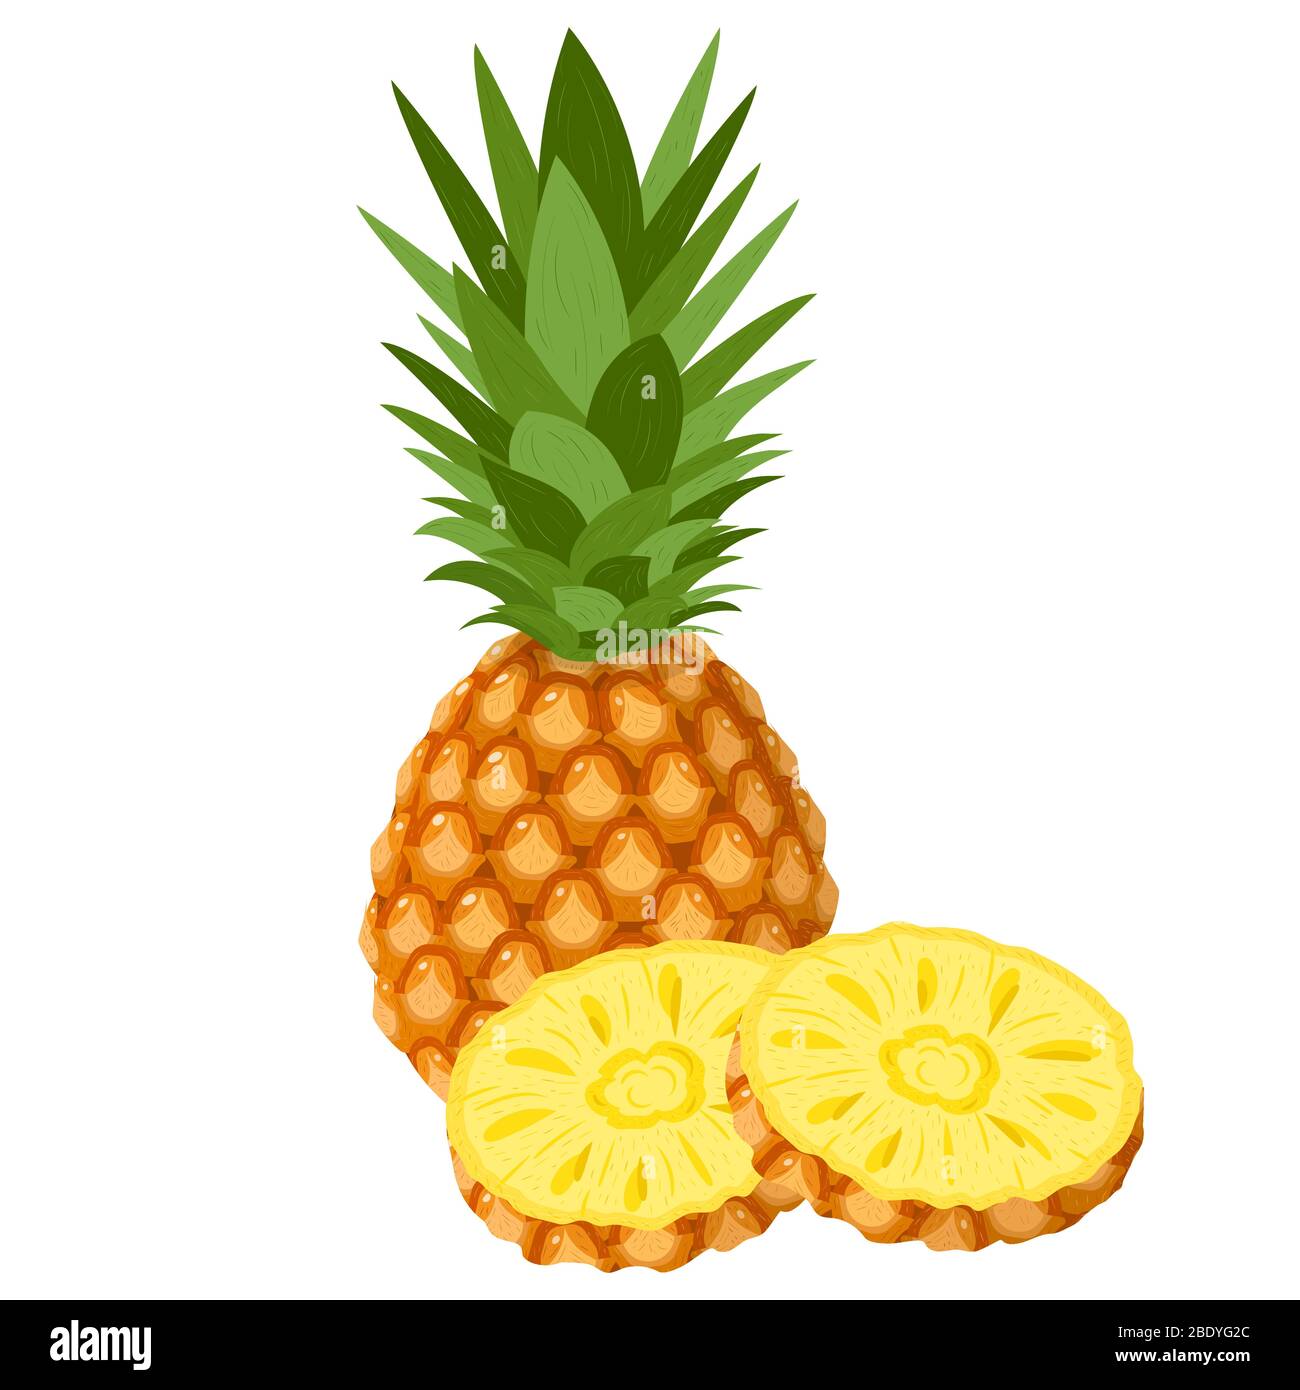 Frische ganze und geschnittene Ringe Ananas Früchte isoliert auf weißem Hintergrund. Sommerfrüchte für einen gesunden Lebensstil. Bio-Obst. Cartoon-Stil. Vektor-Abb. Stock Vektor